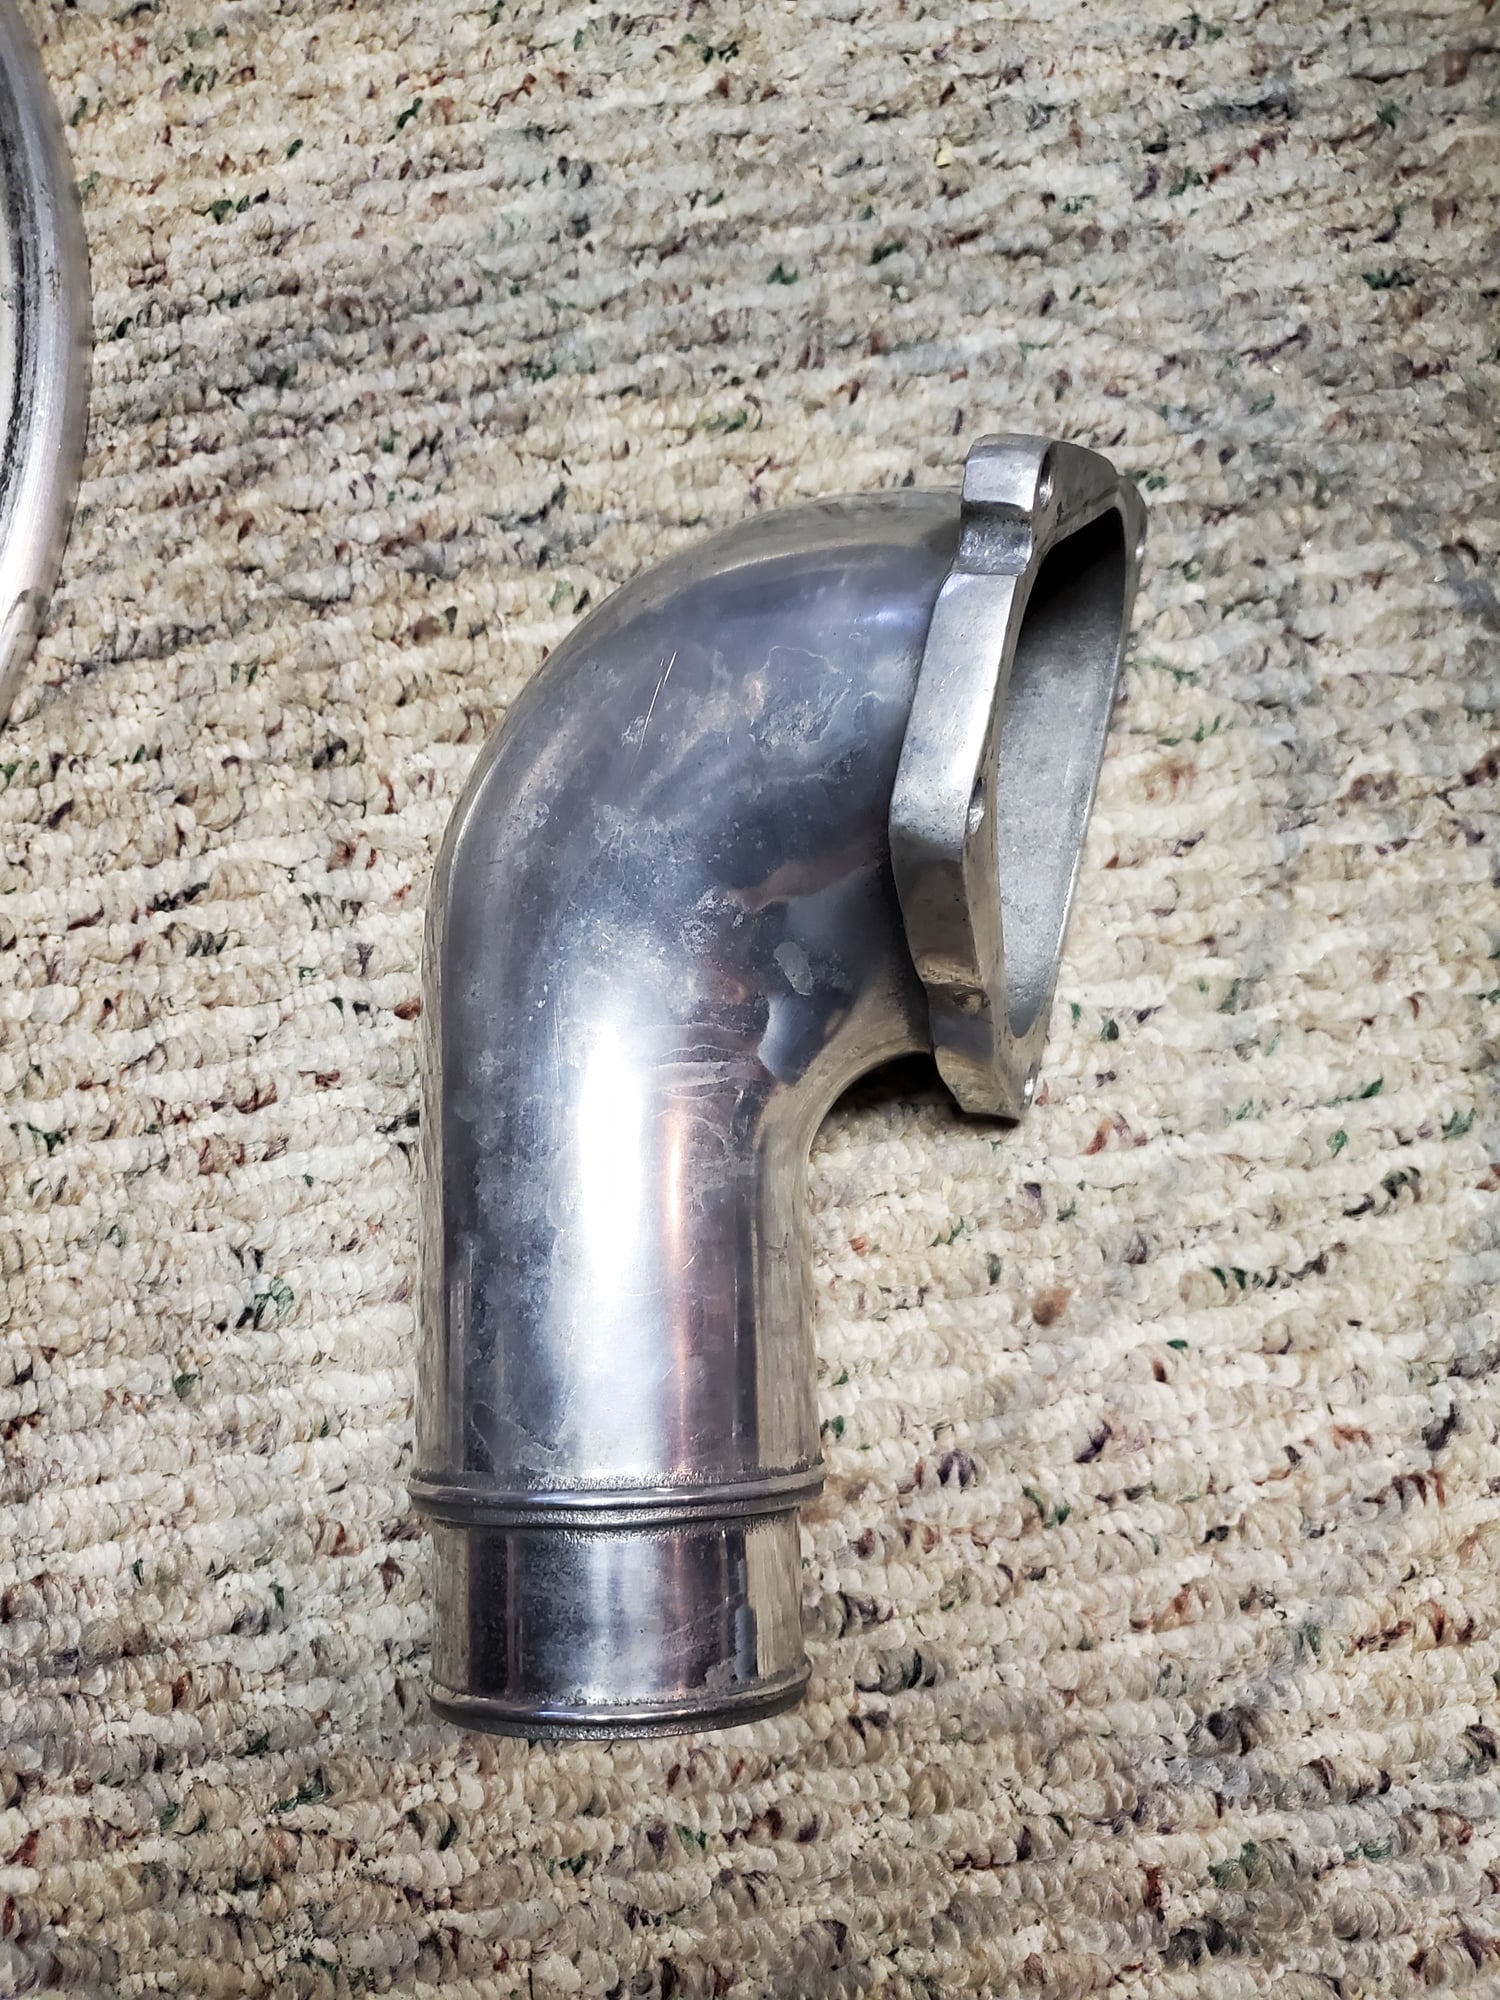 Accessories - Greddy compression elbow - Used - 1993 to 2002 Mazda RX-7 - Cambridge, MA 02138, United States